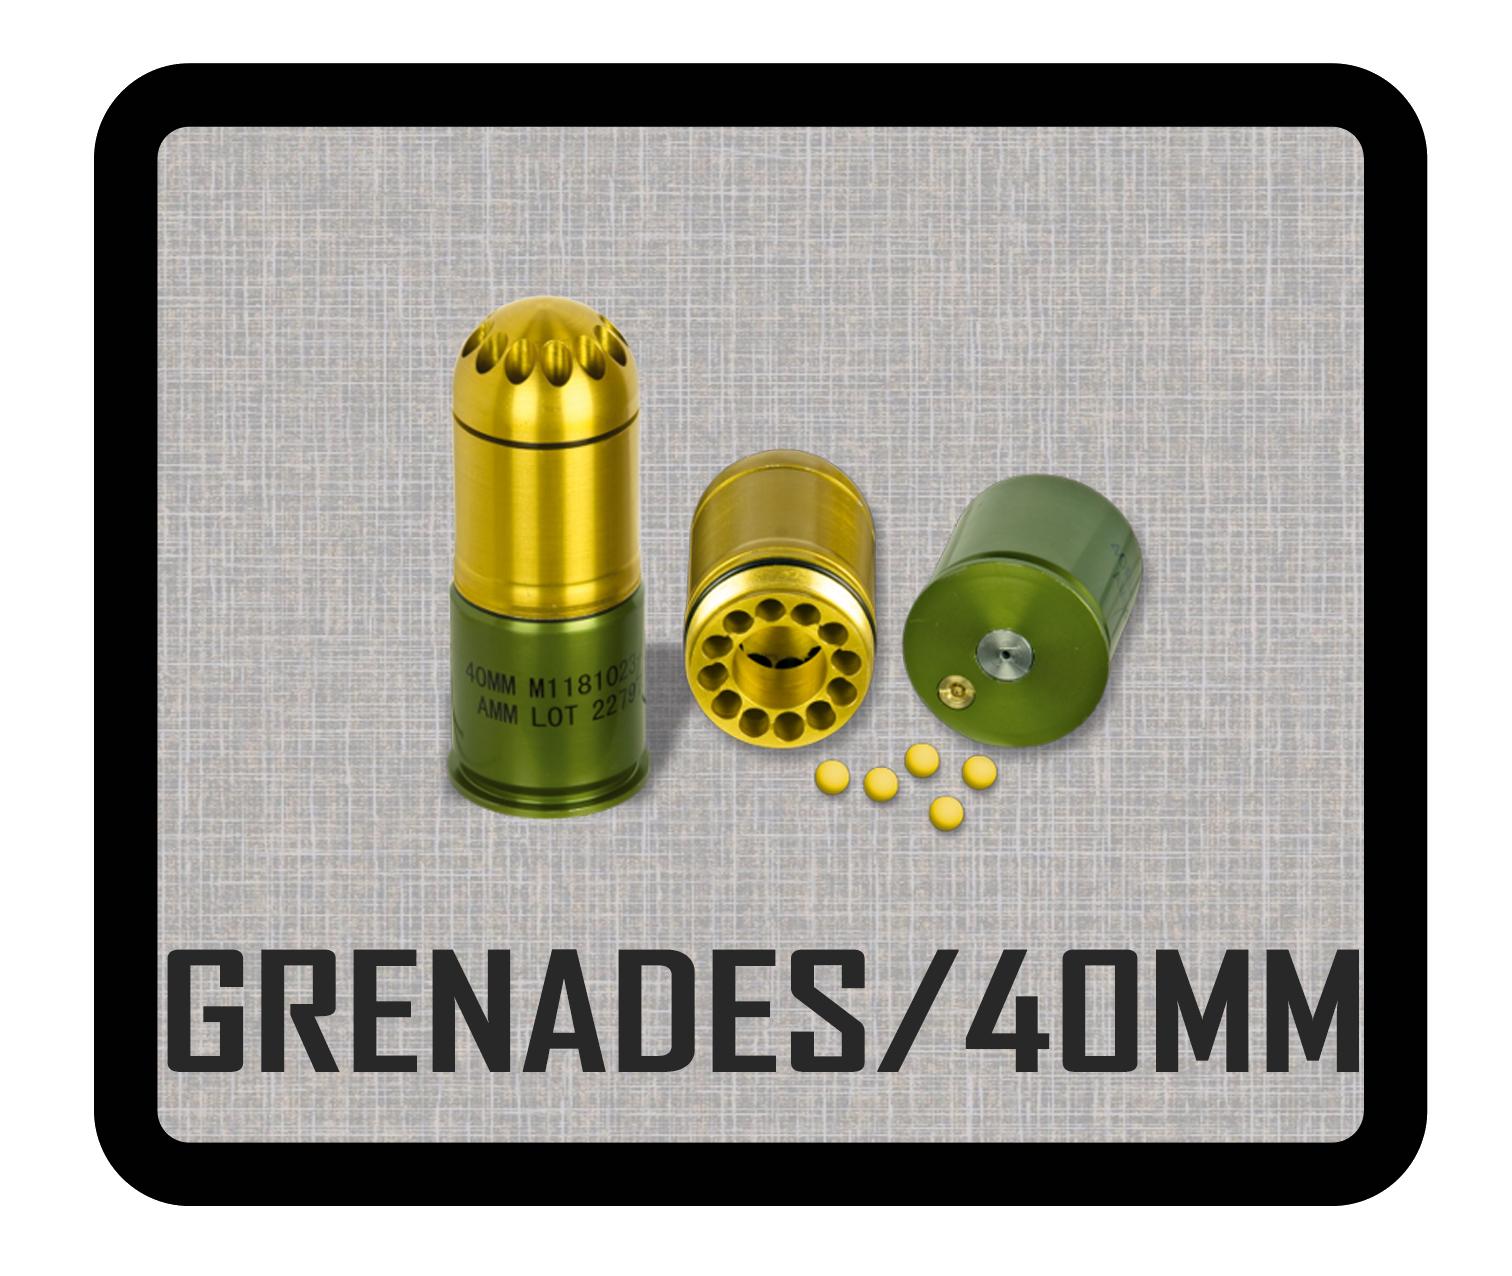 GRENADES / 40mm